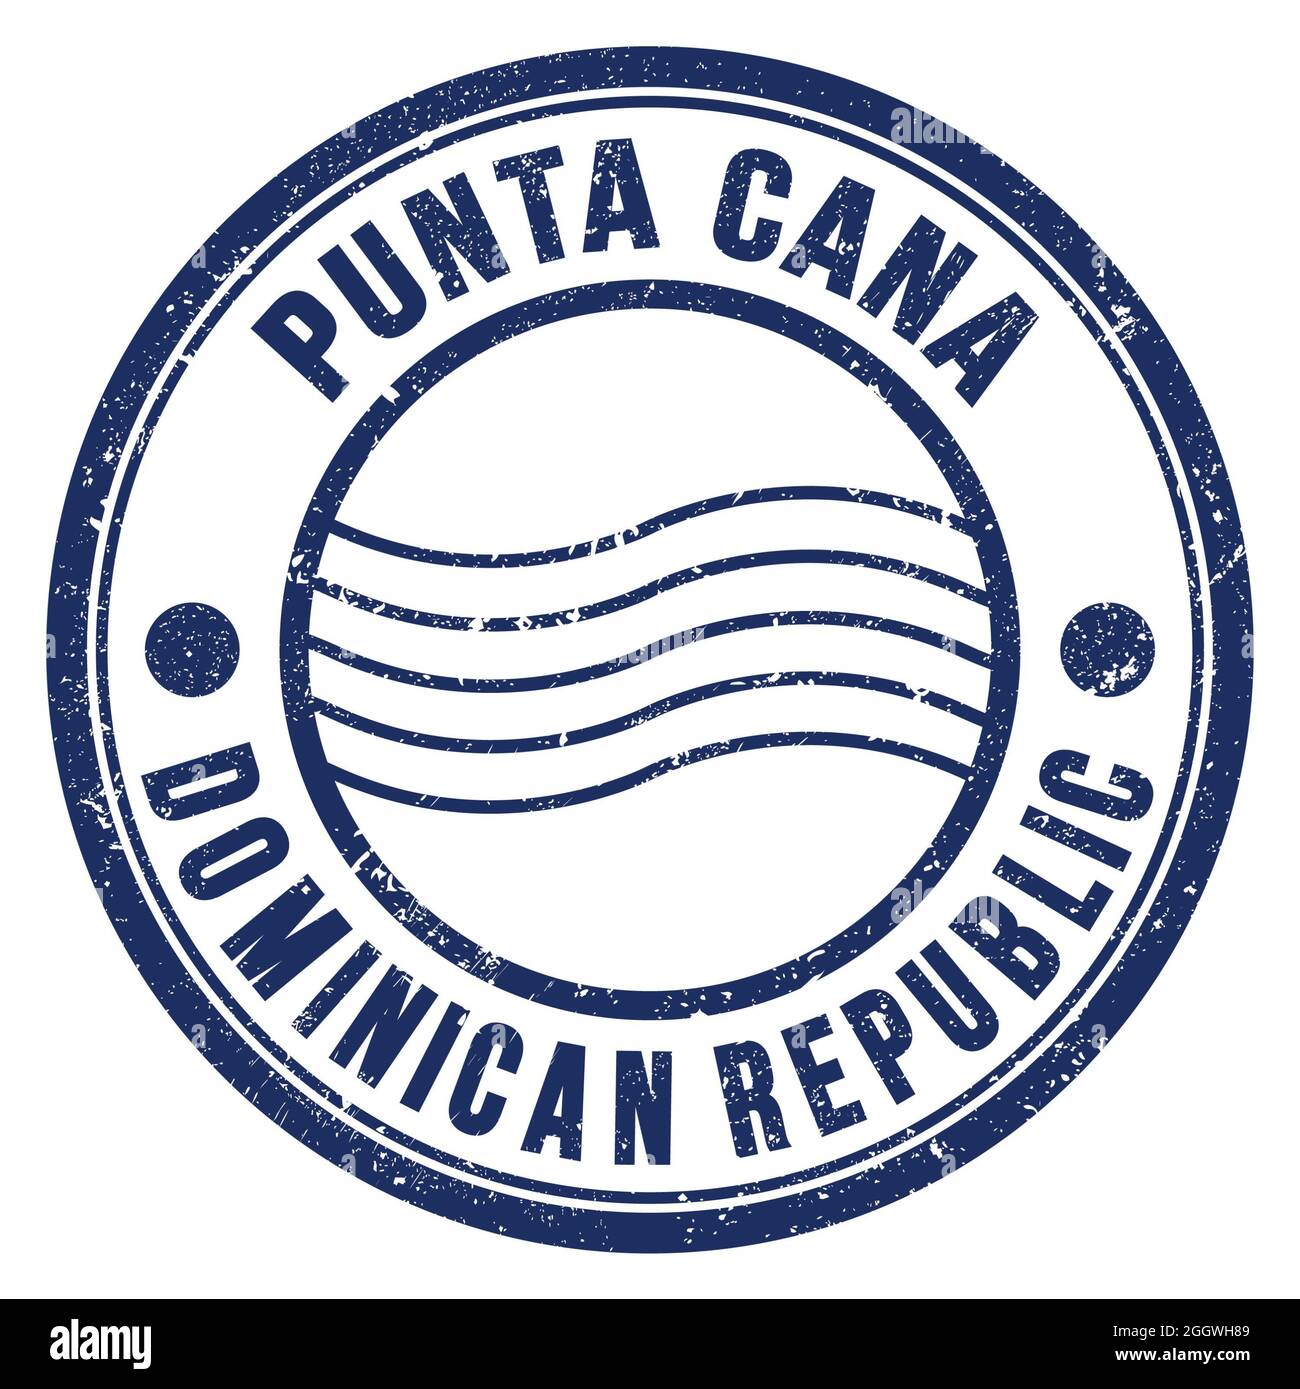 PUNTA CANA - RÉPUBLIQUE DOMINICAINE, mots écrits sur le timbre postal rond bleu Banque D'Images